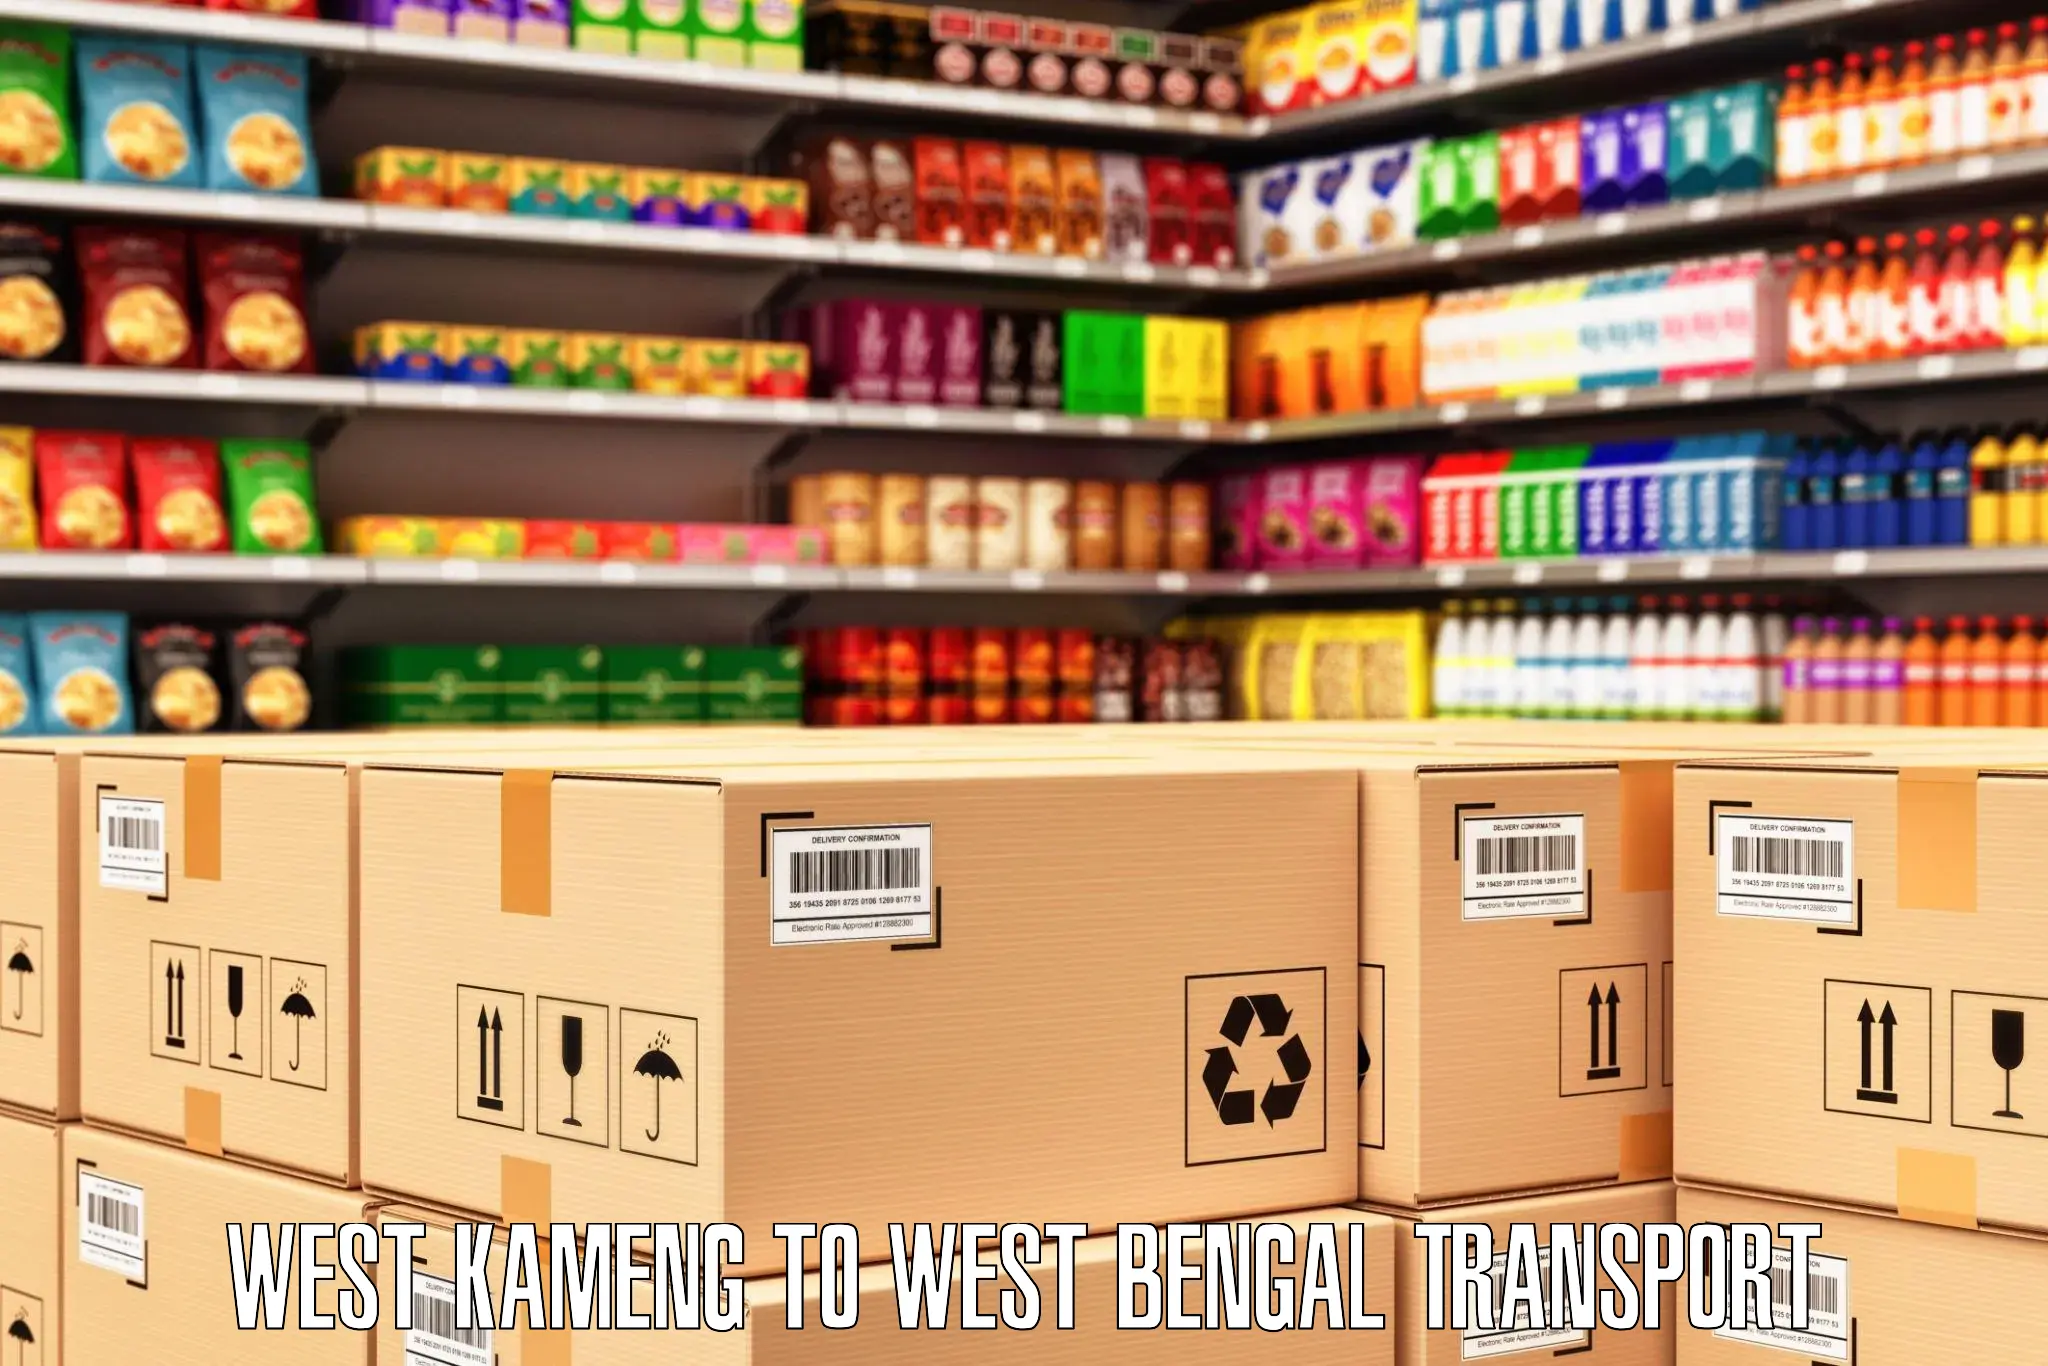 Two wheeler parcel service West Kameng to Hemtabad